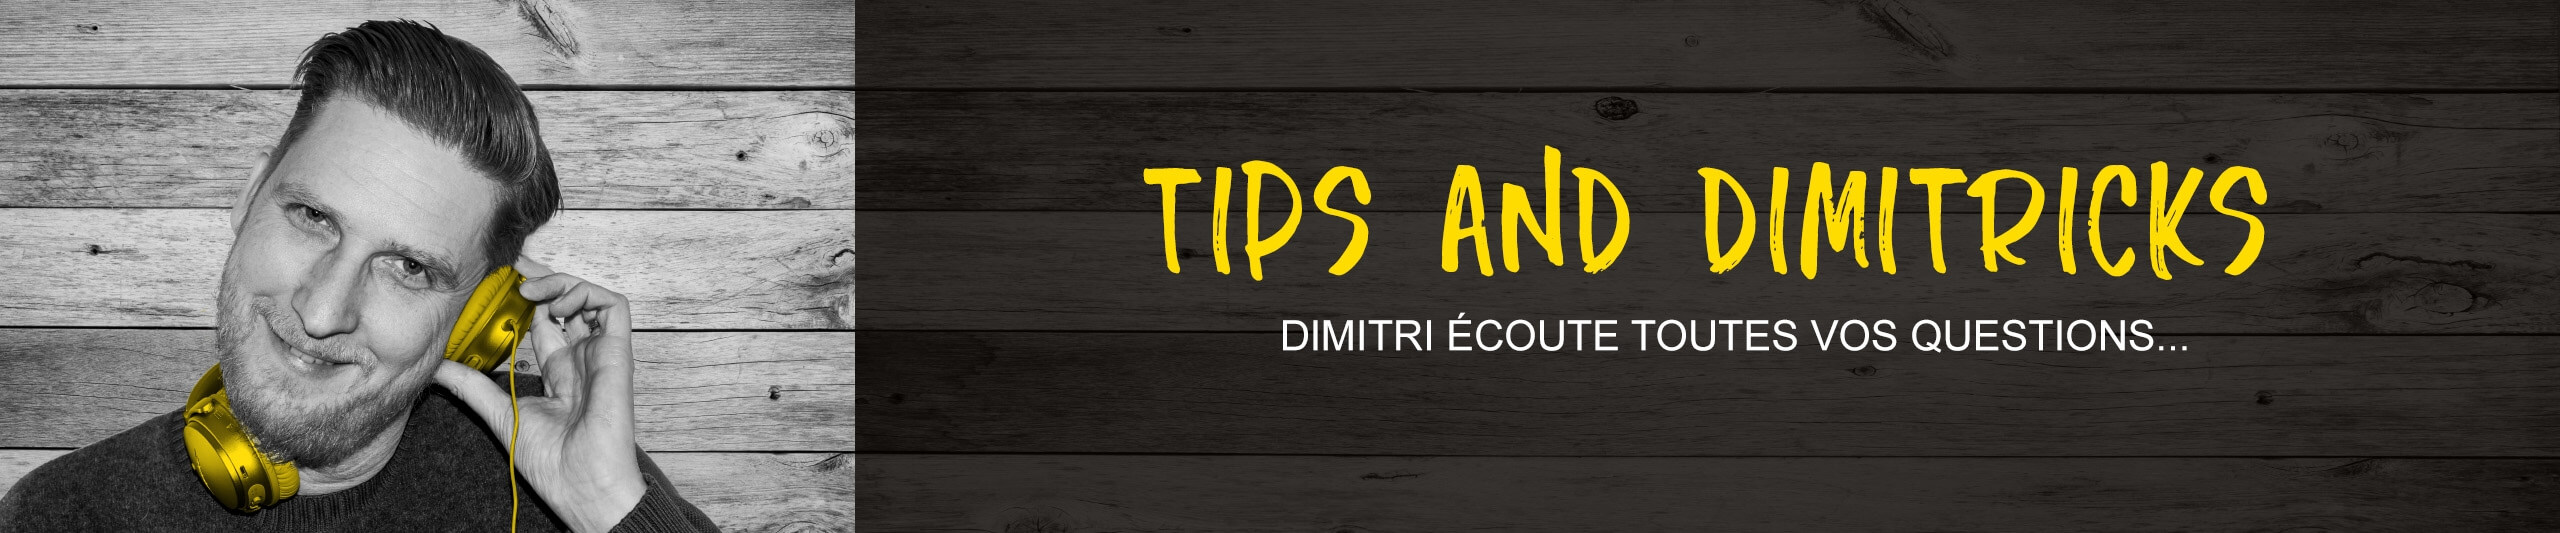 Tips et Dimitricks